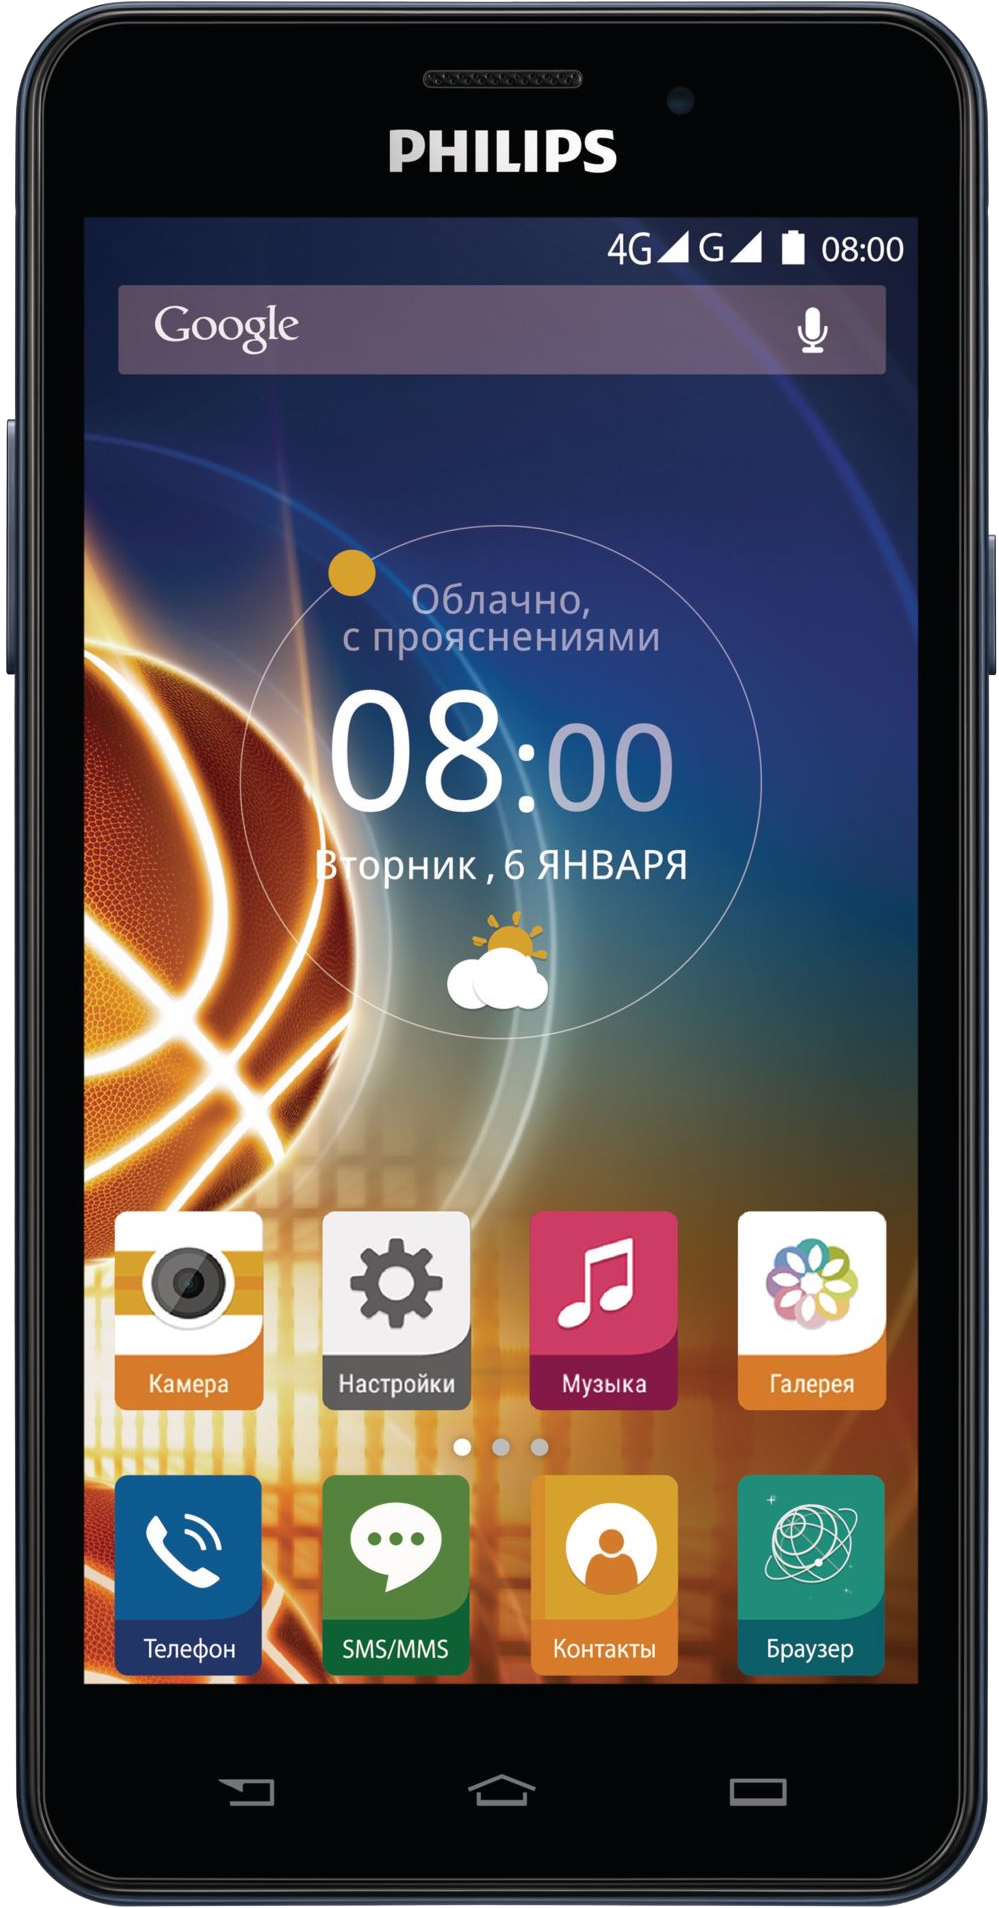 Музыка филипс телефон. Смартфон Philips Xenium v526 LTE. Philips Xenium смартфон сенсорный. Сенсорный телефон Филипс Xenium v526. Philips Xenium Android 2 SIM.